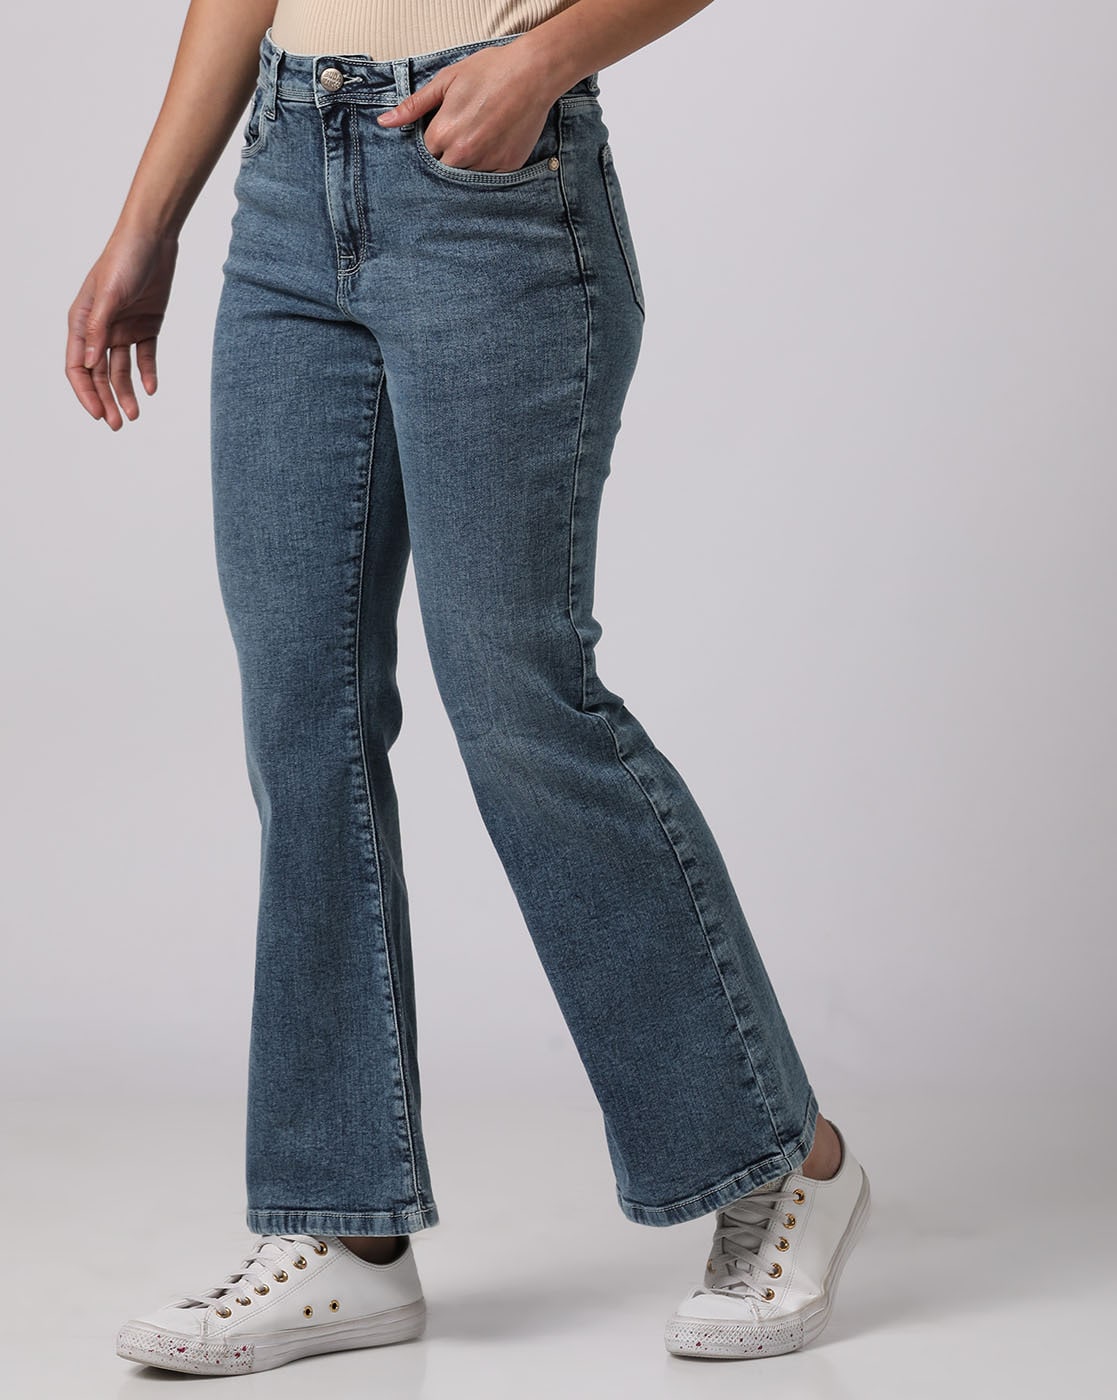 Meet Desires Bell Bottom Jeans for girls parallel jeans-pokeht.vn